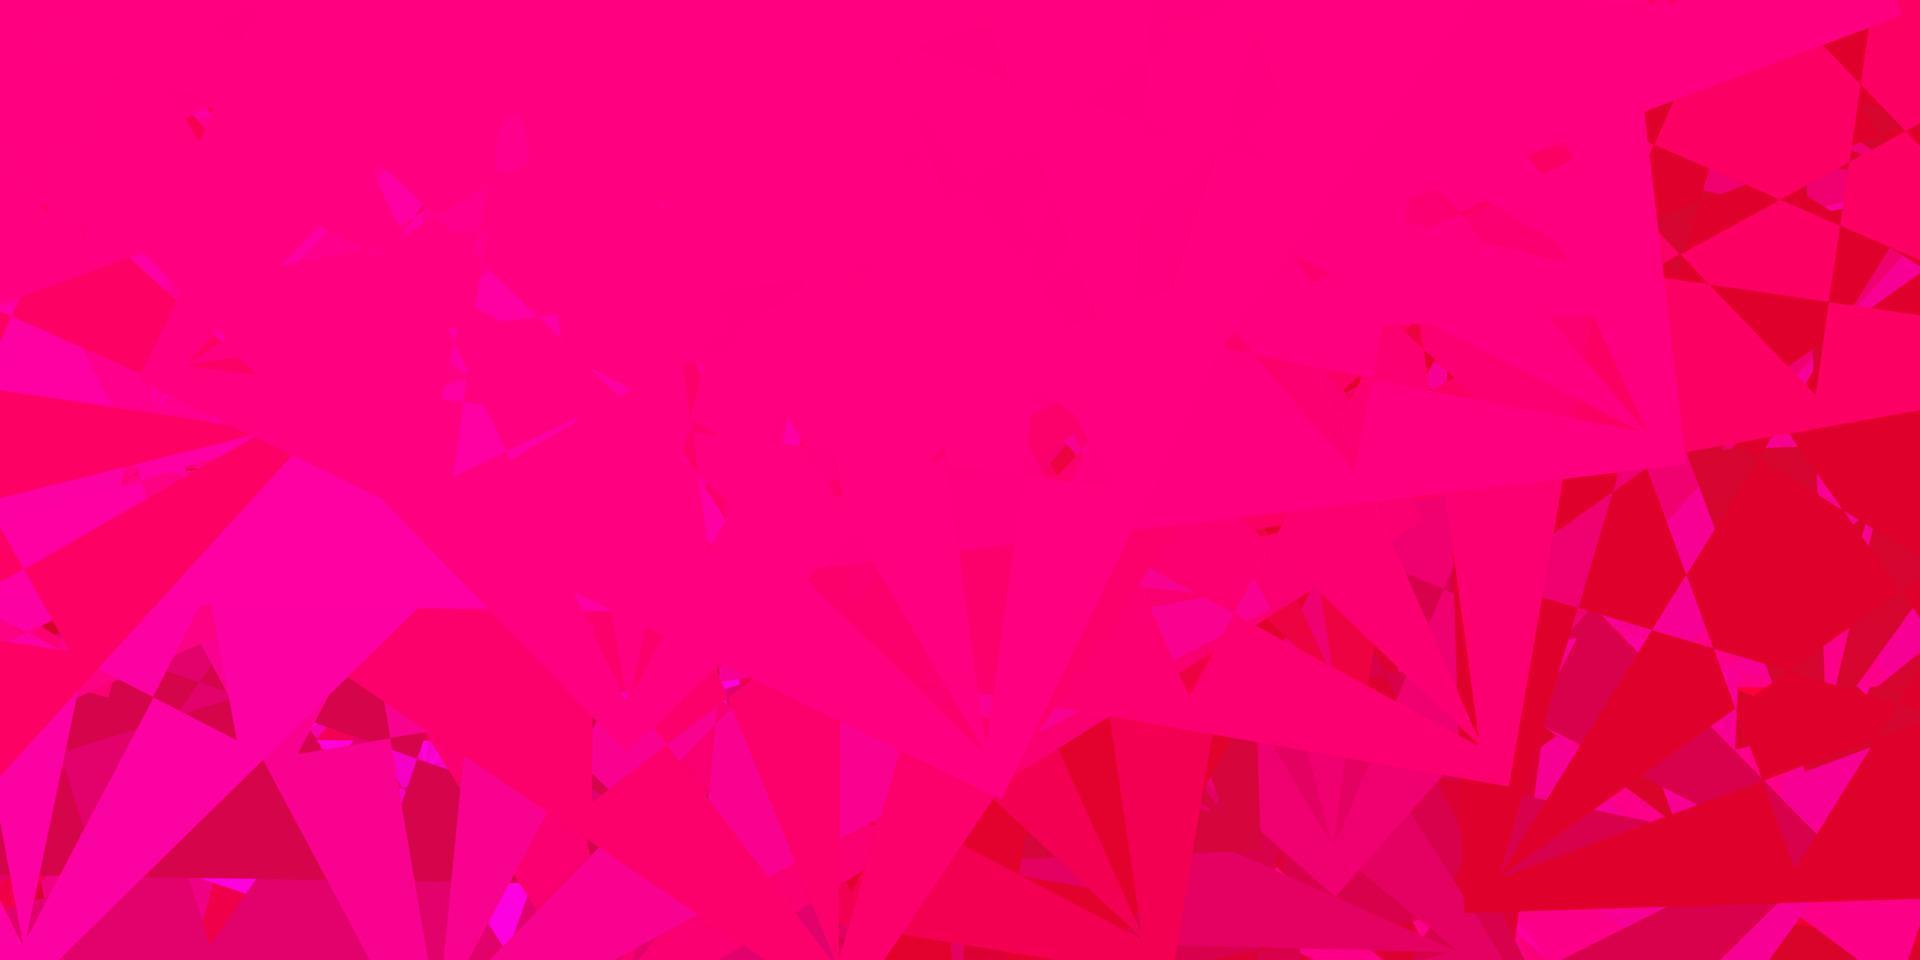 Fondo de vector rosa oscuro con formas poligonales.